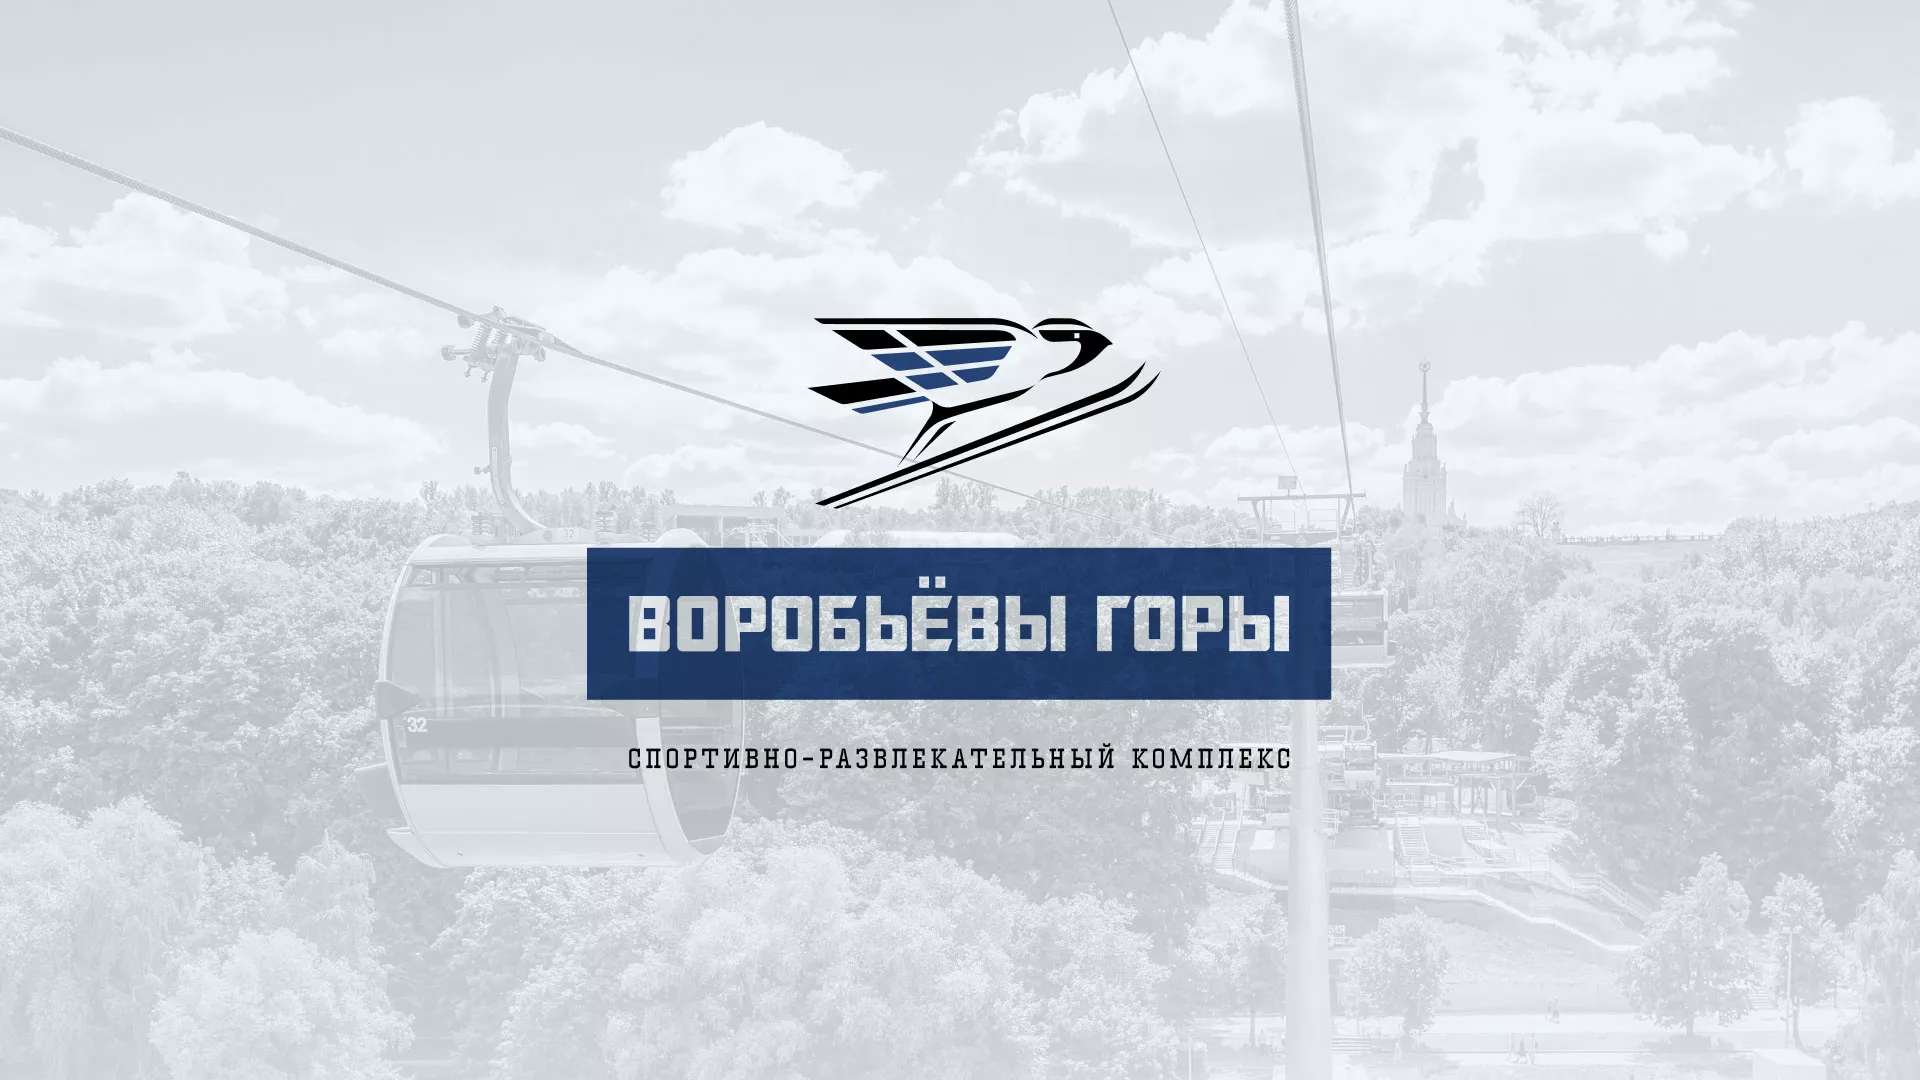 Разработка сайта в Мариинске для спортивно-развлекательного комплекса «Воробьёвы горы»